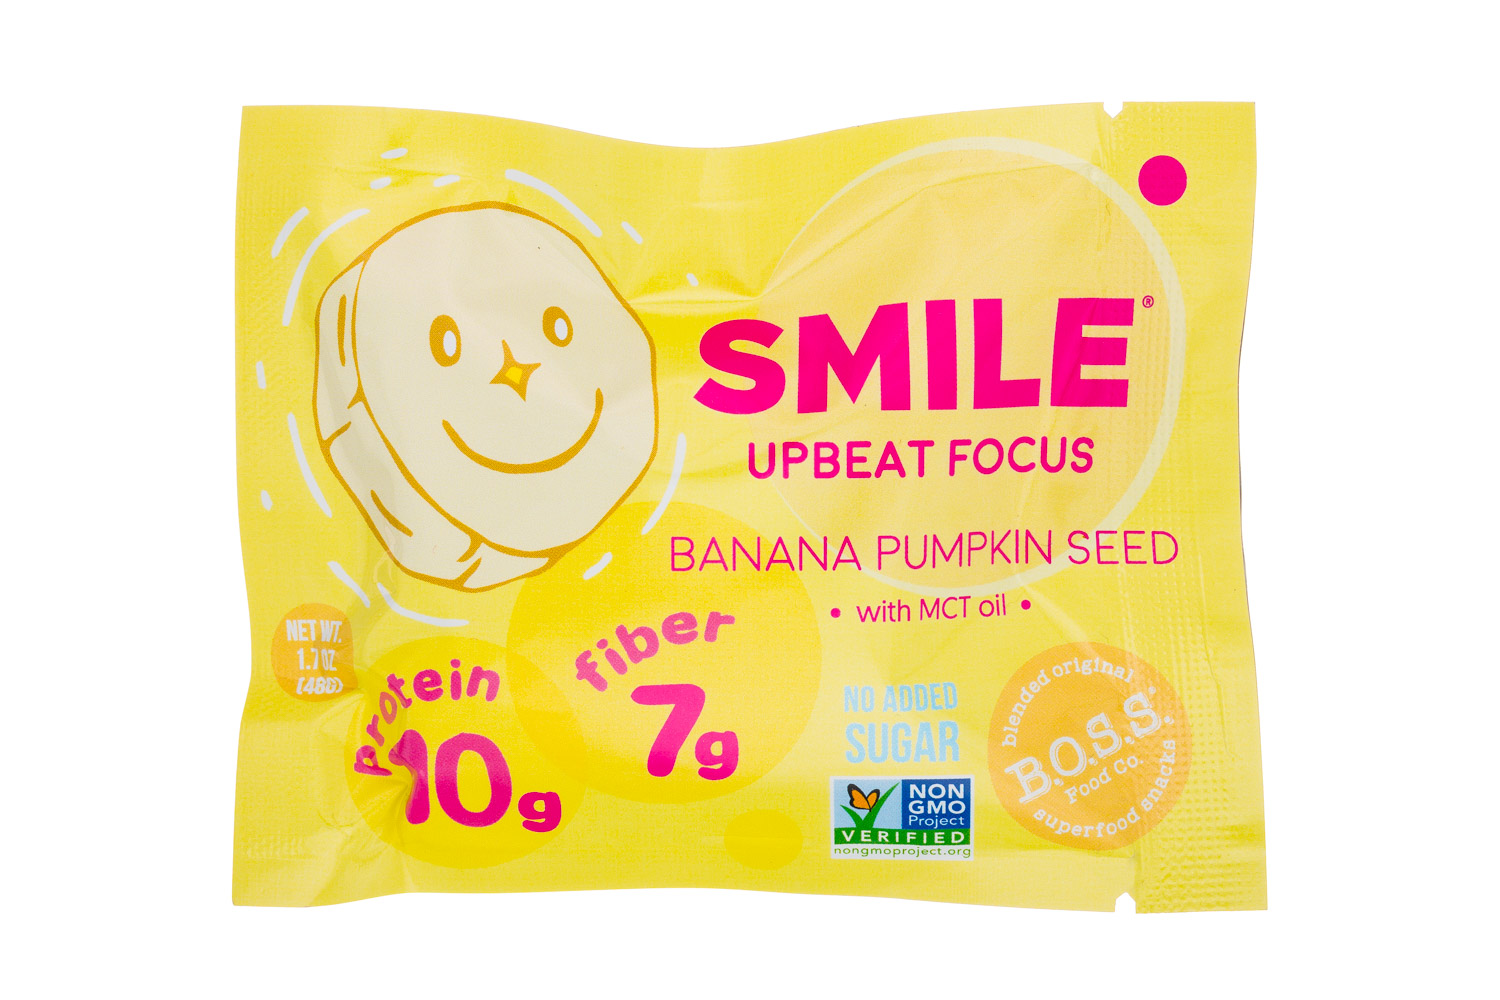 SMILE - Upbeat Focus